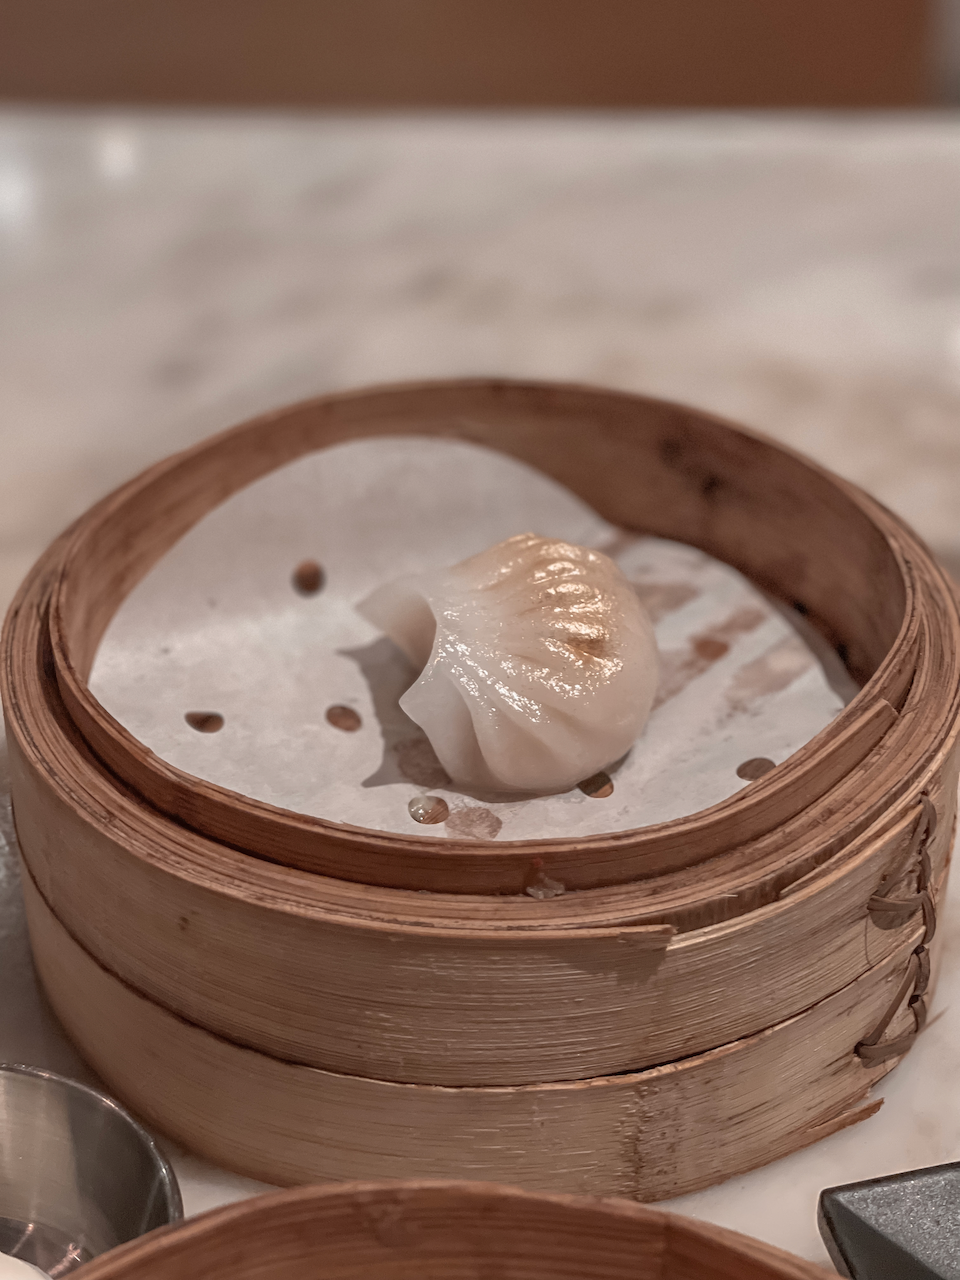 Cute little shrimp dumpling at Yum Cha - Hong Kong